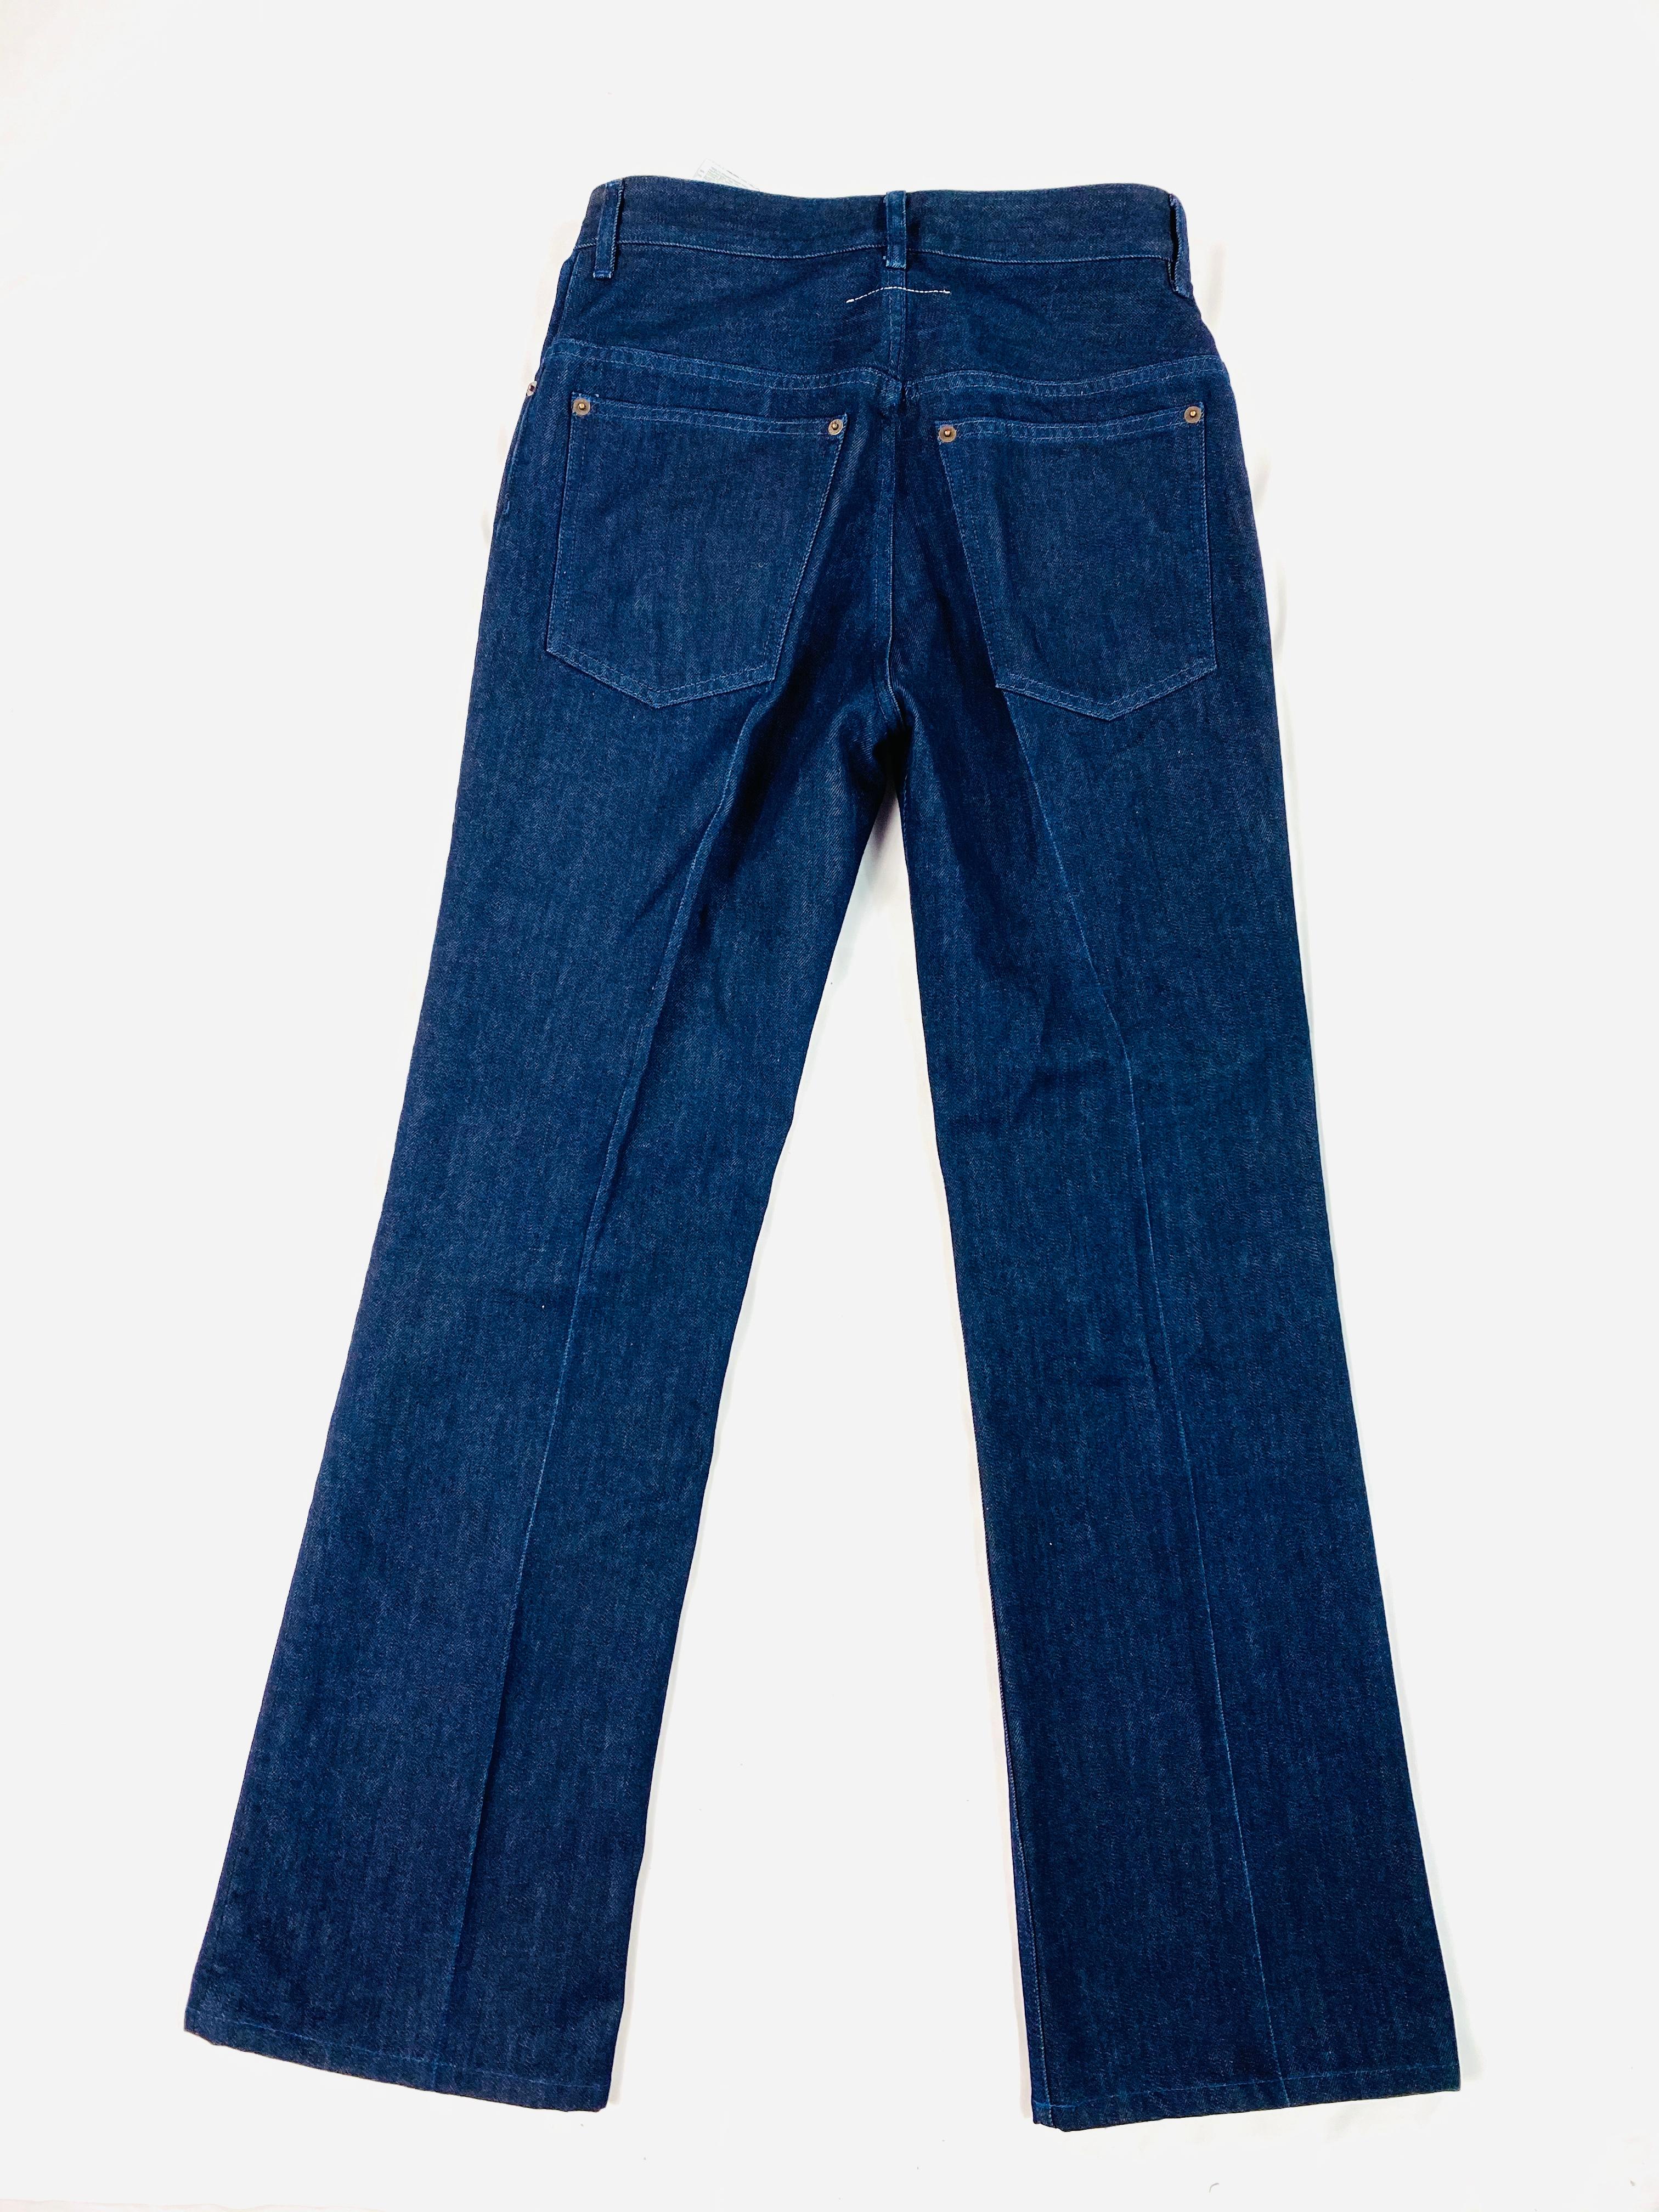 Women's or Men's MM6 Maison Margiela Paris Dark Blue Denim Pants Size 40